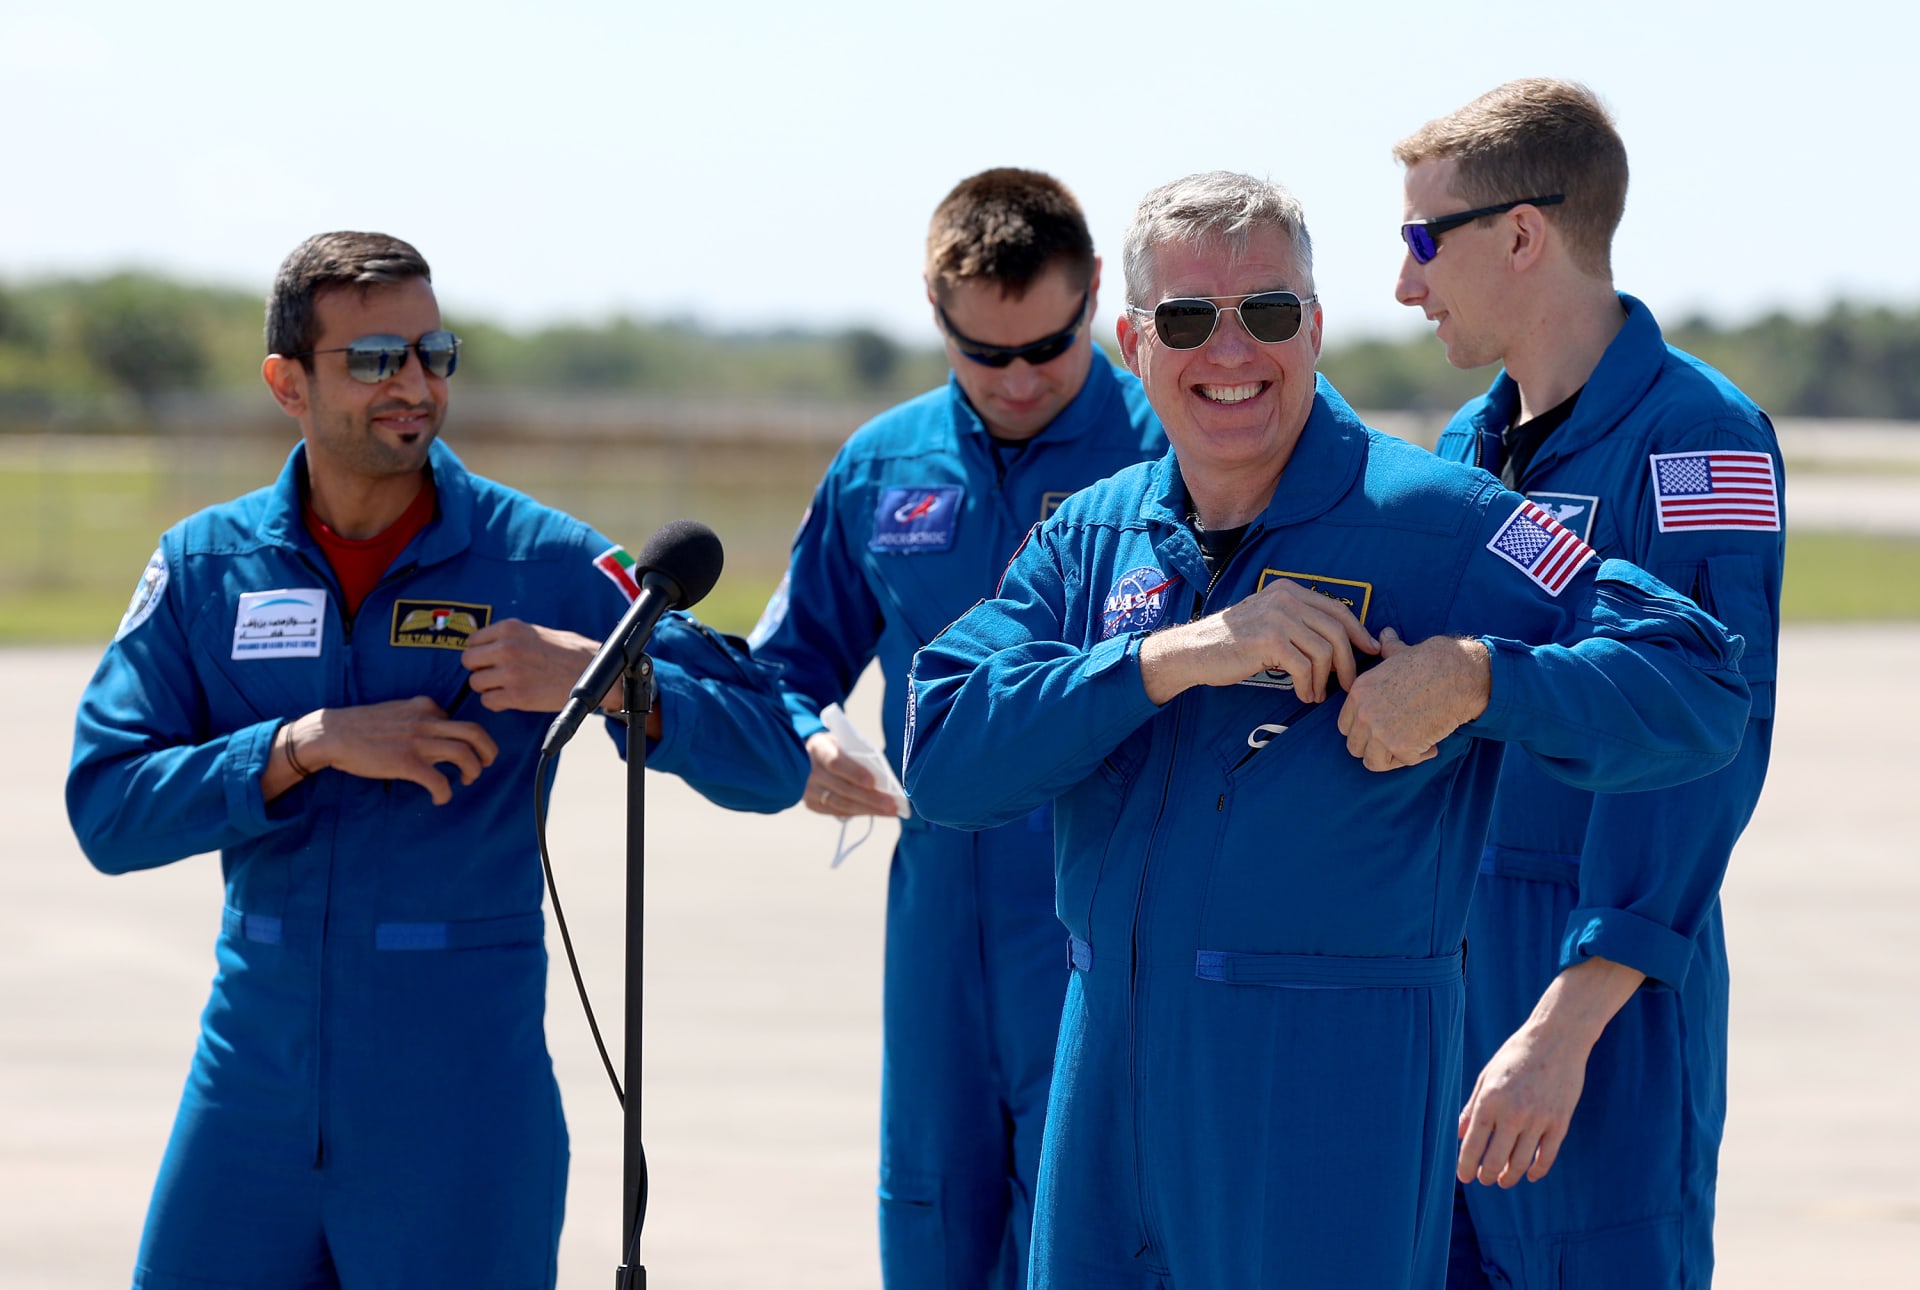 اللحظات الأولى لخروج رائد الفضاء الإماراتي سلطان النيادي من مركبة "دراغون" بعد نقلها لسفينة الإنقاذ